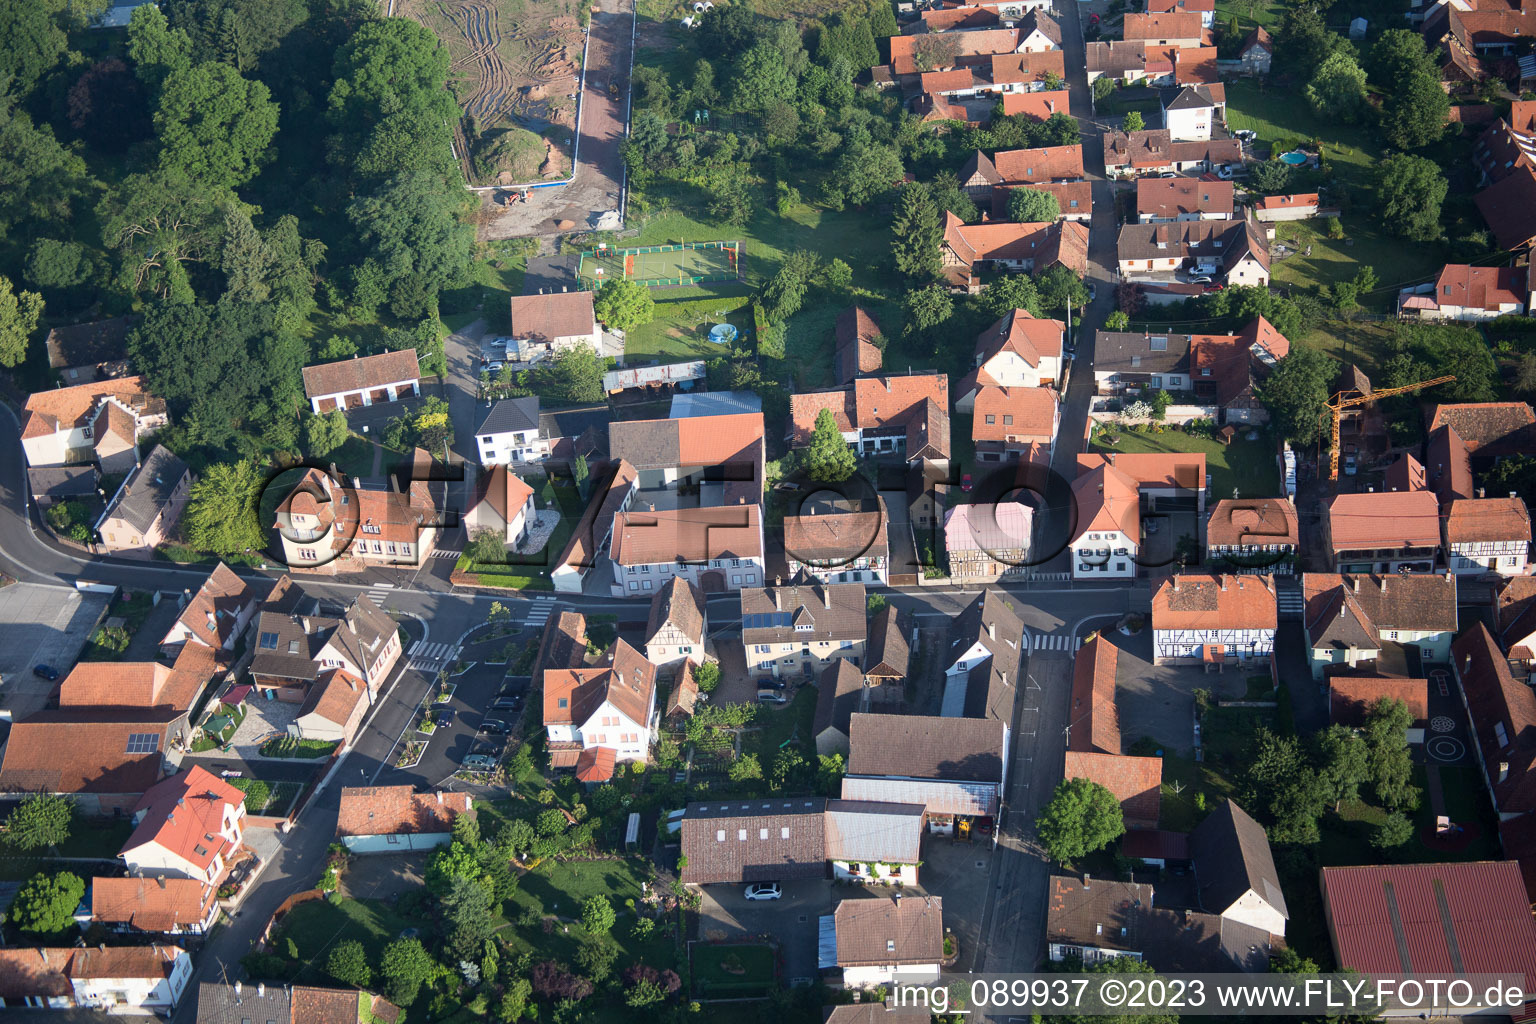 Altenstadt dans le département Bas Rhin, France vu d'un drone